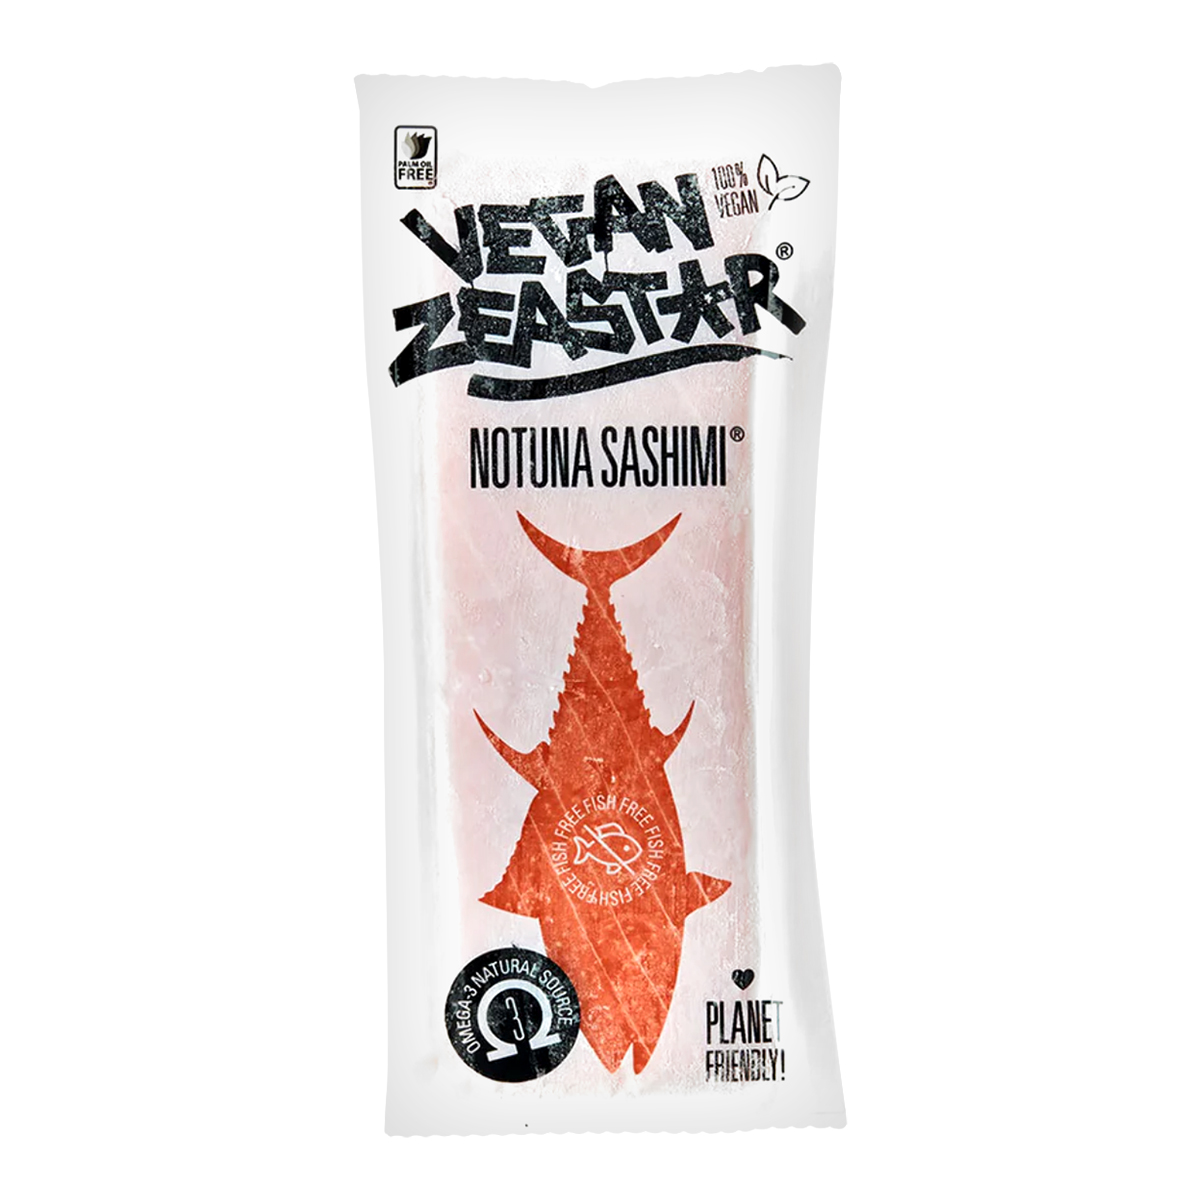 Exclusiv in magazine - NoTuna Vegetal Sashimi VEGAN ZEASTAR 310g, asianfood.ro